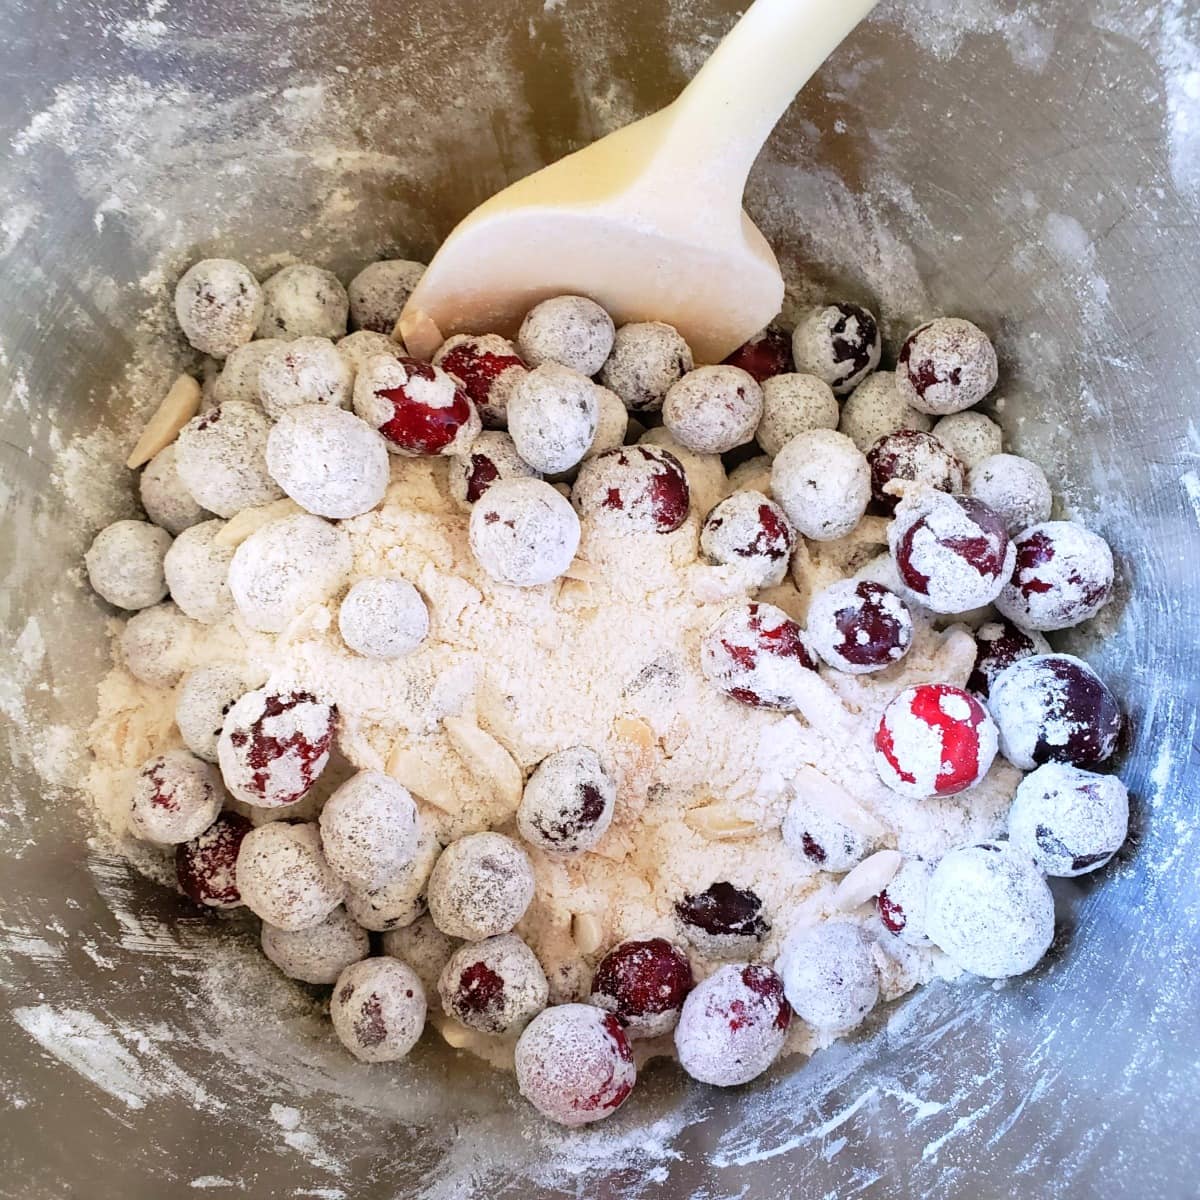 Stir cranberries into the flour